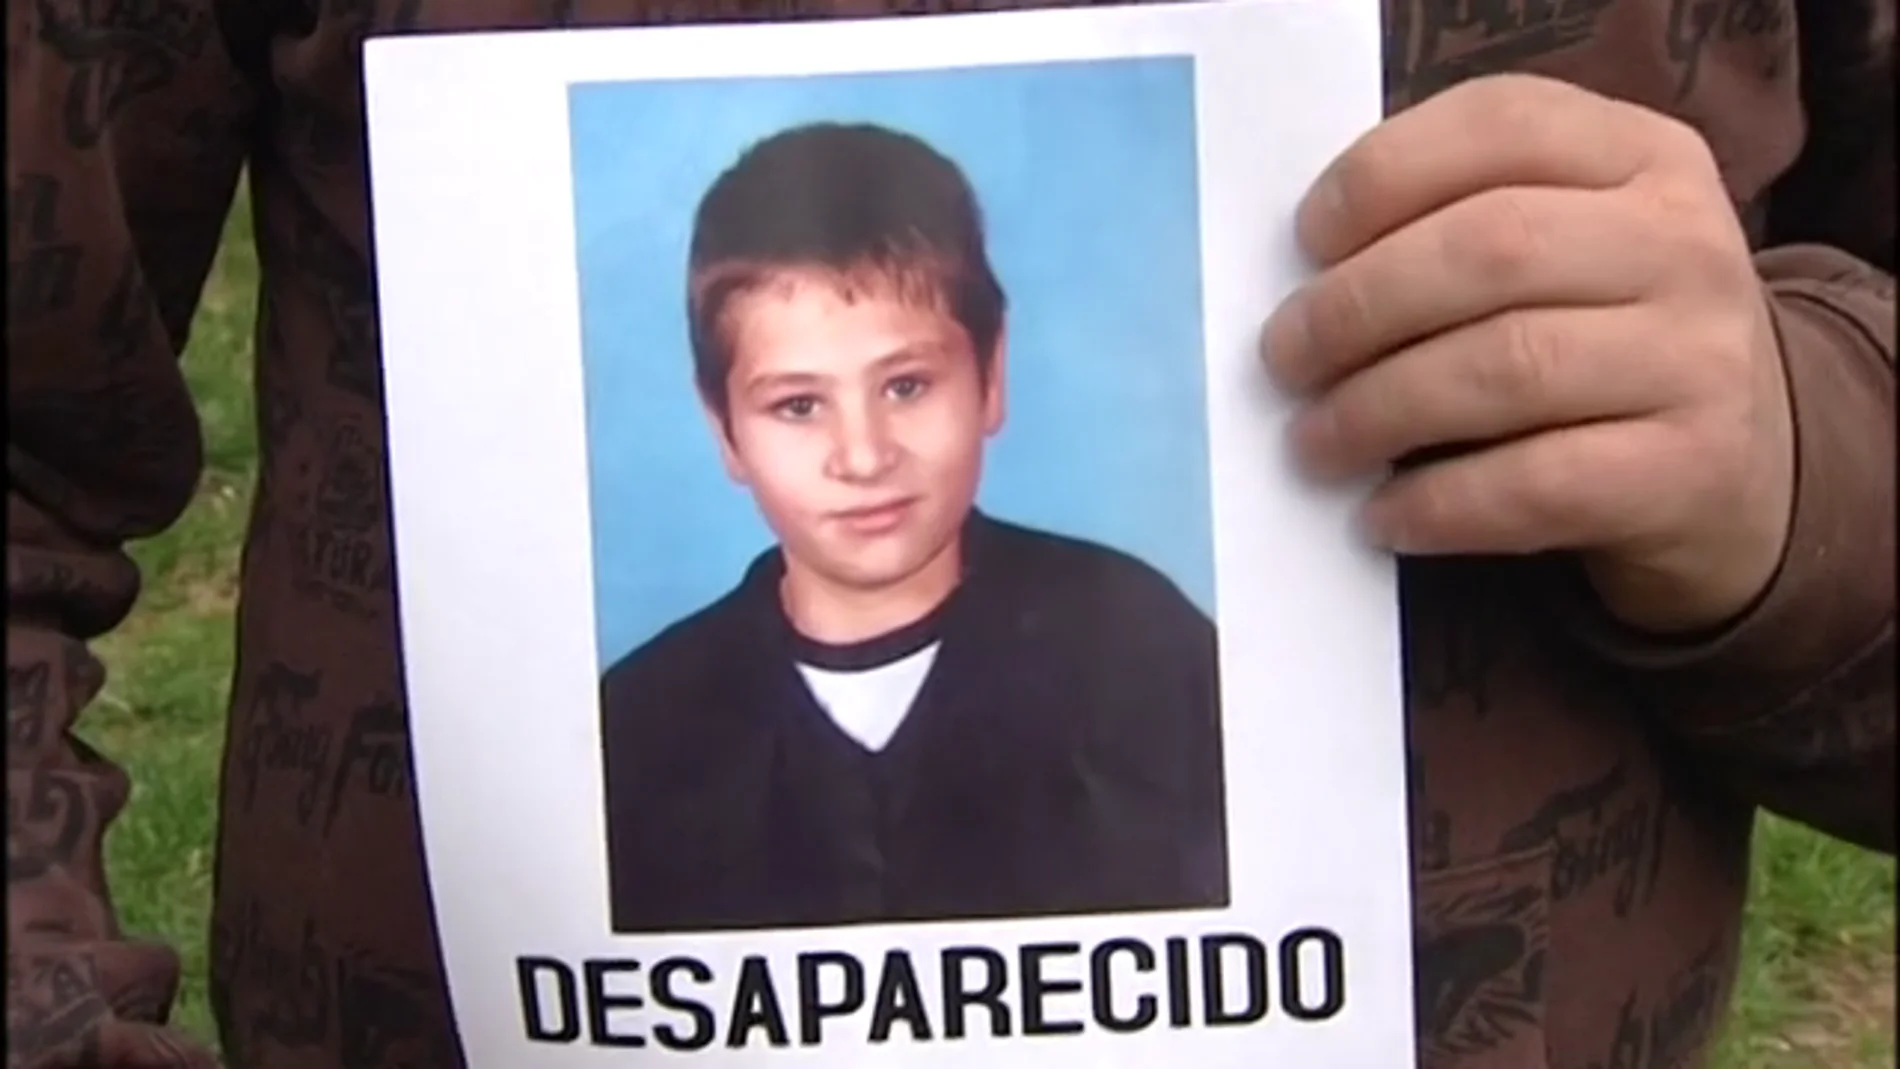 Desaparece un niño rumano en Madrid 